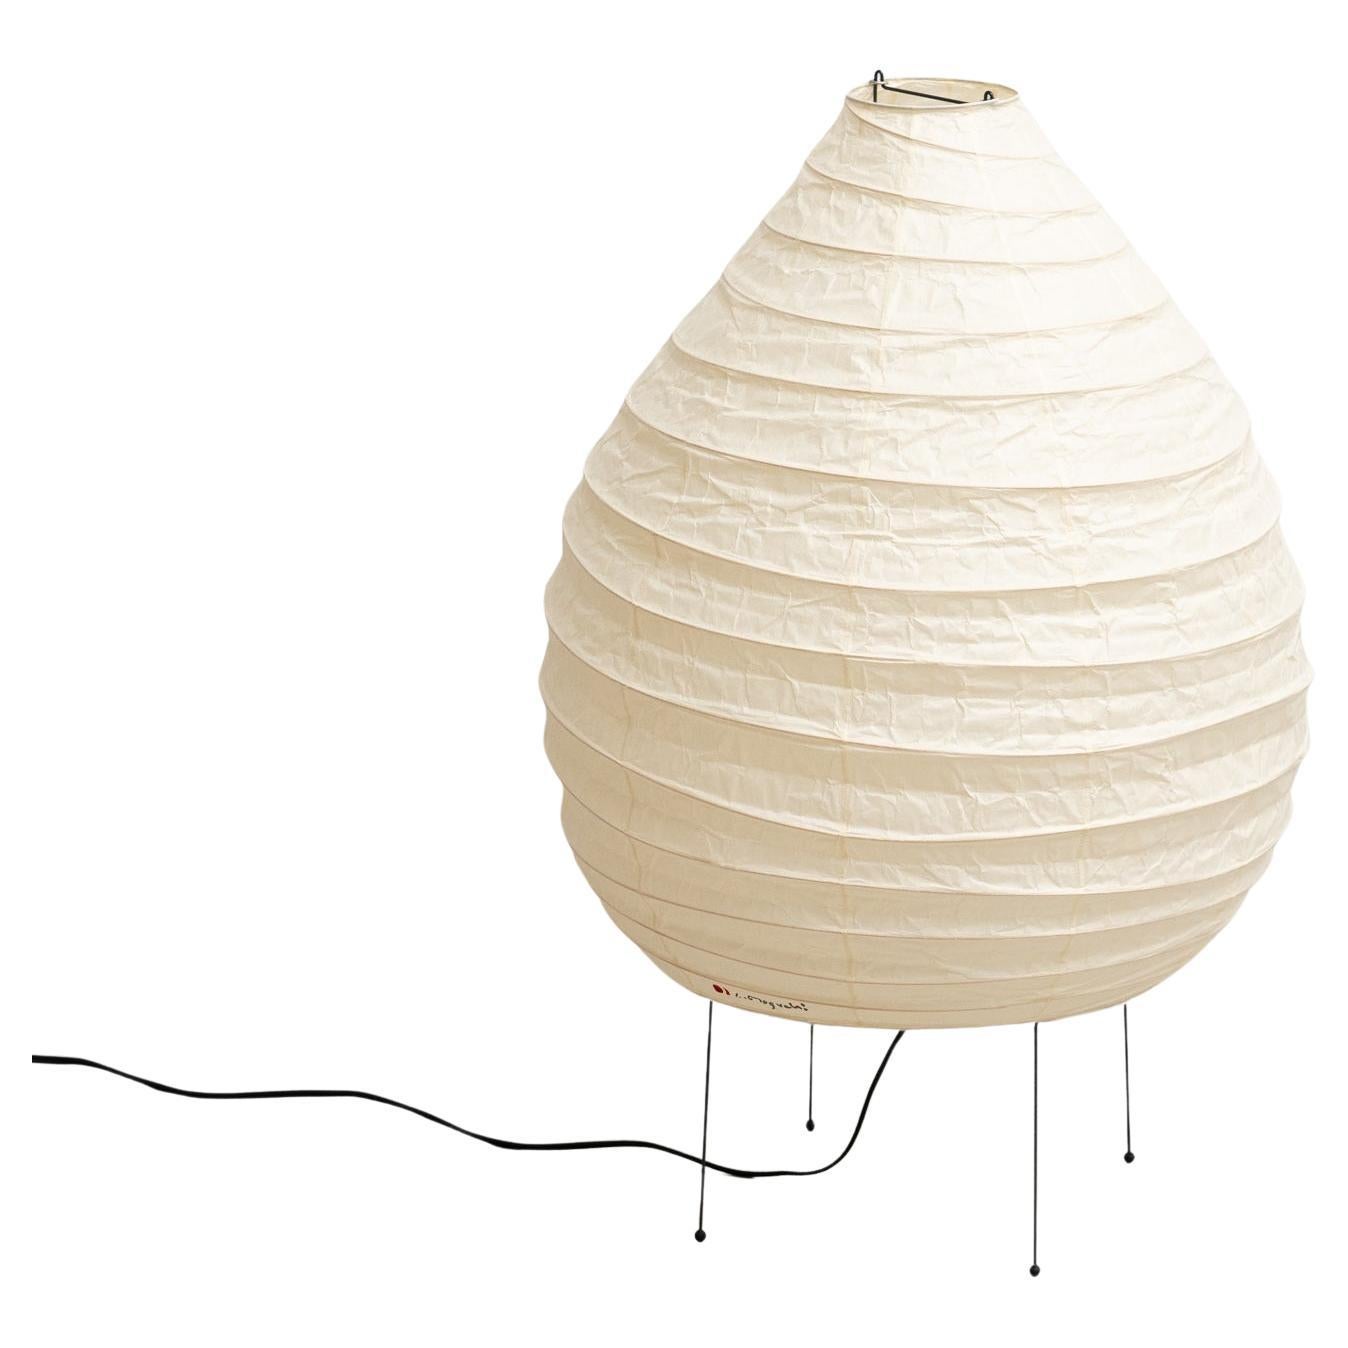 Japanese paper lamps by designer Isamu Noguchi – Metavaya